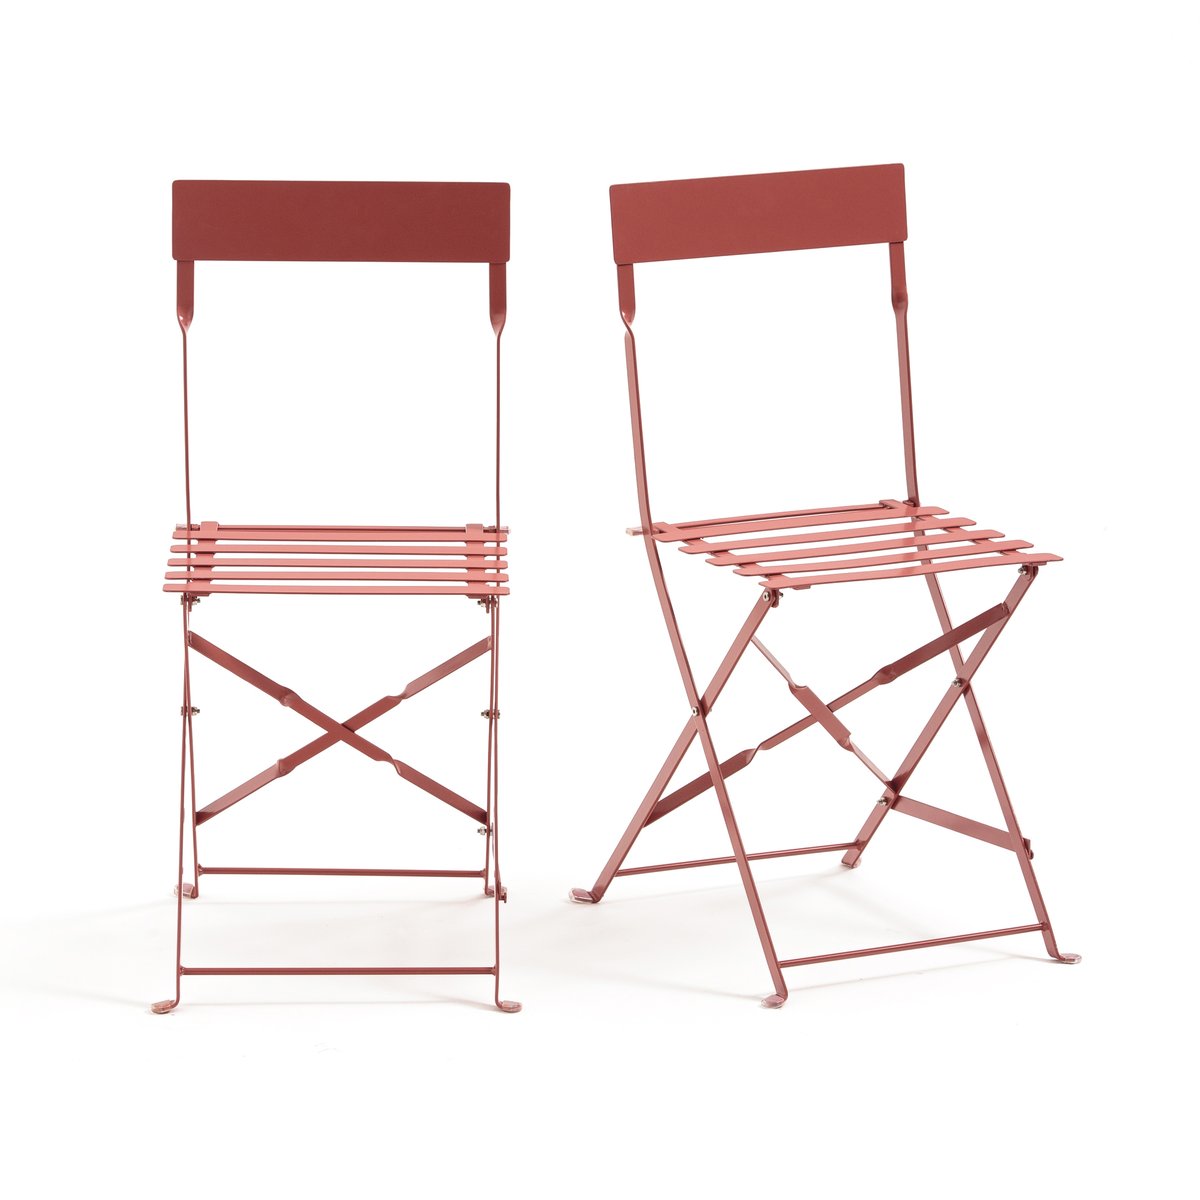 Комплект из 2 складных стульев LaRedoute